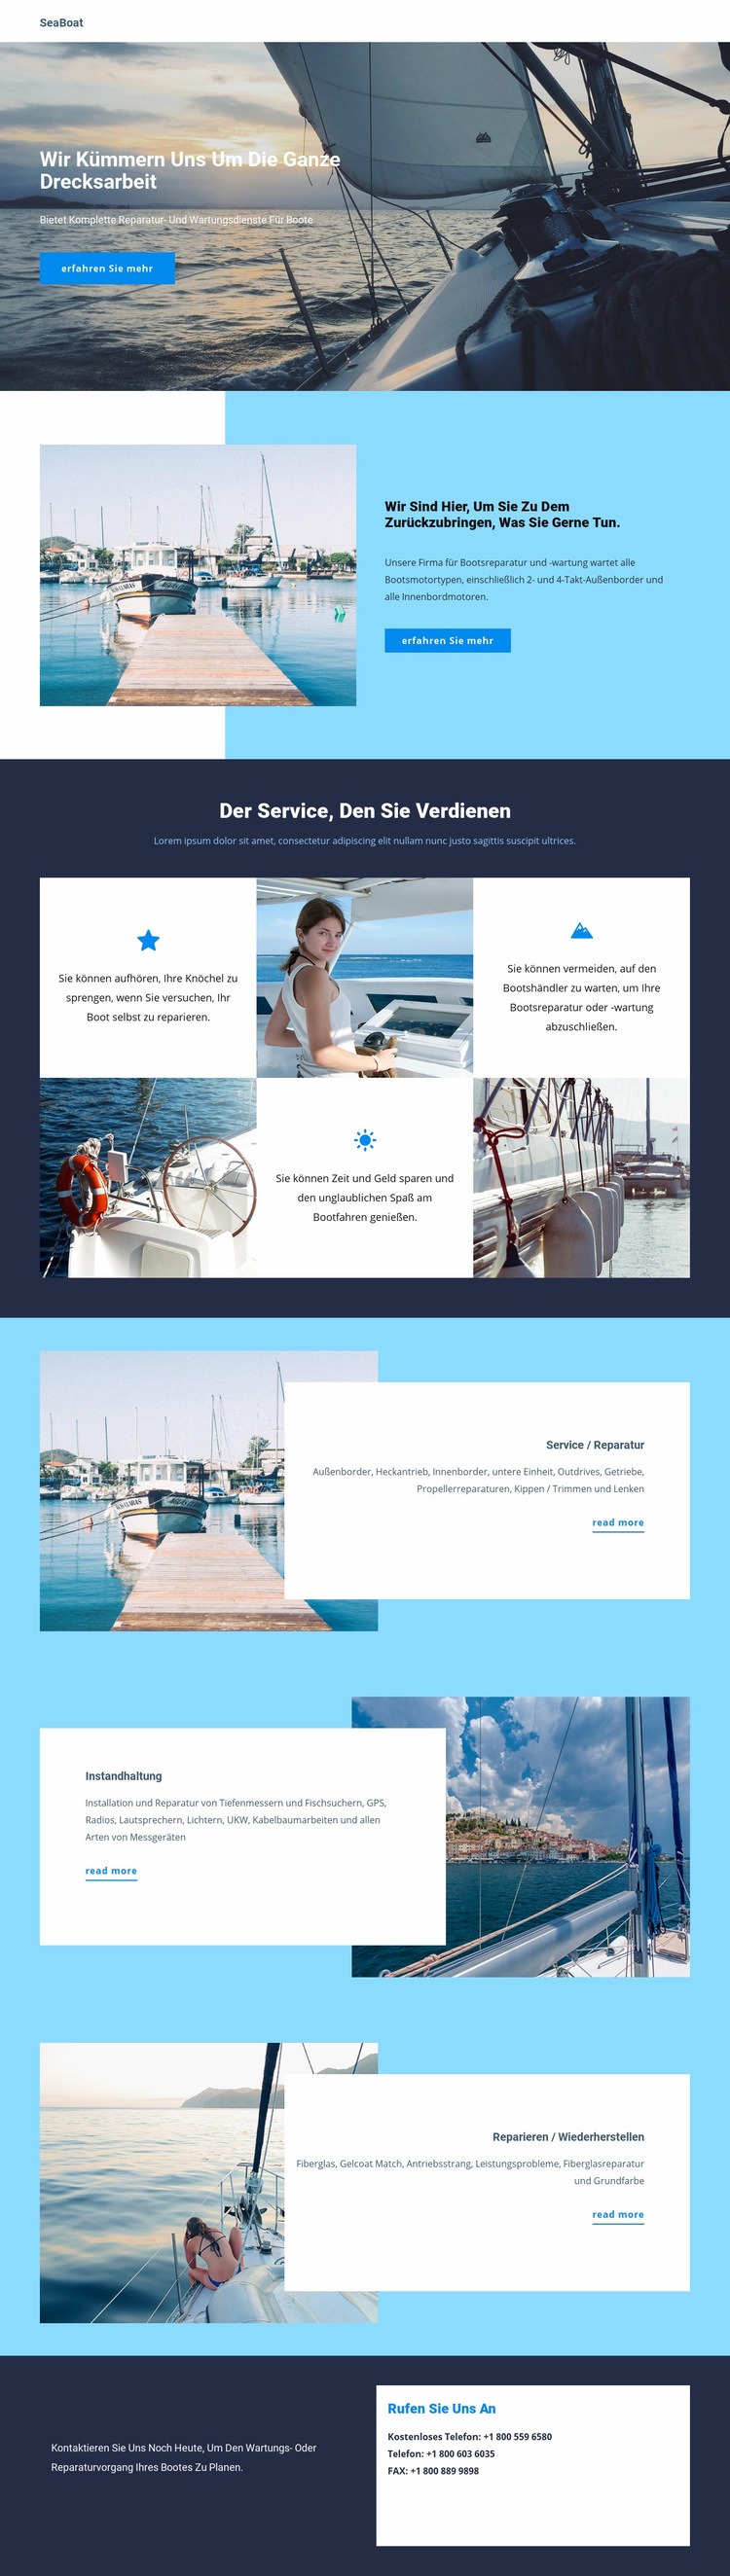 Reisen Sie mit dem Seeboot Website-Modell